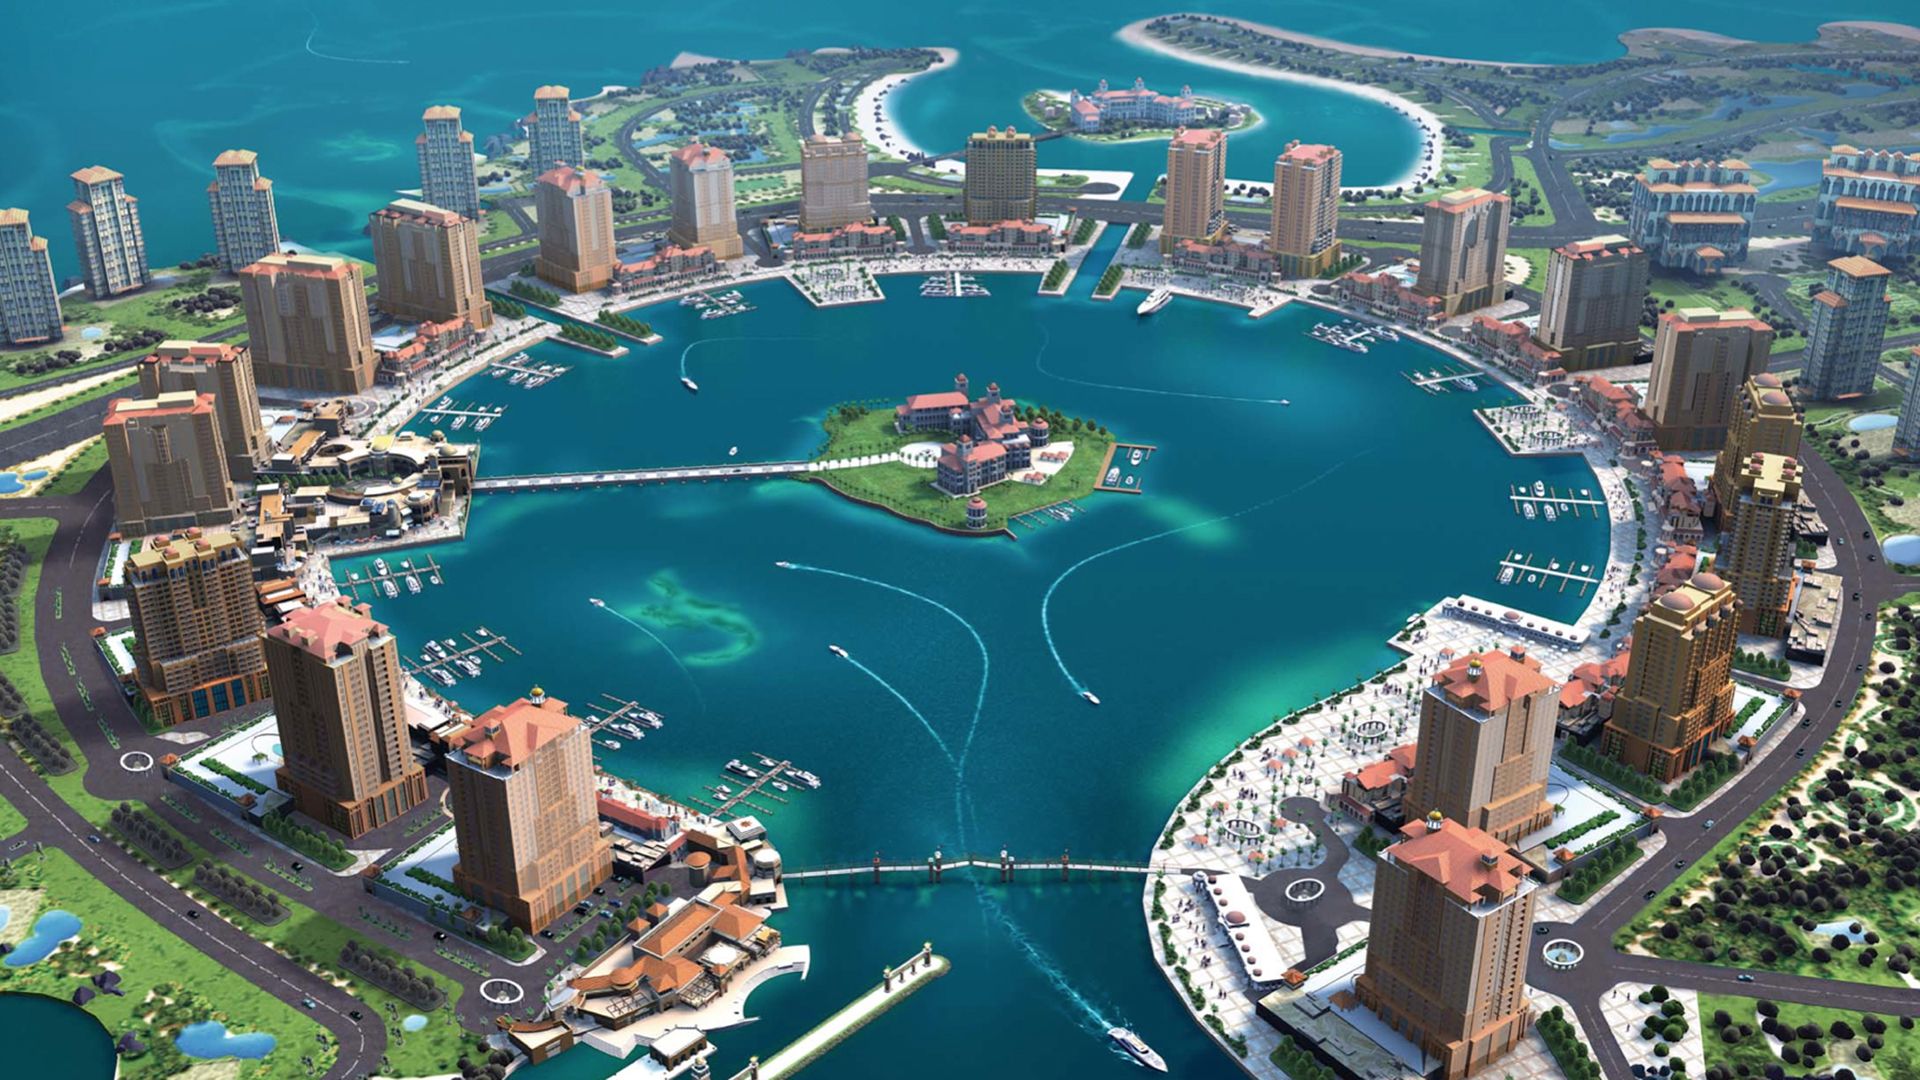 Pearl no Catar: luxo e modernidade, a Riviera Árabe